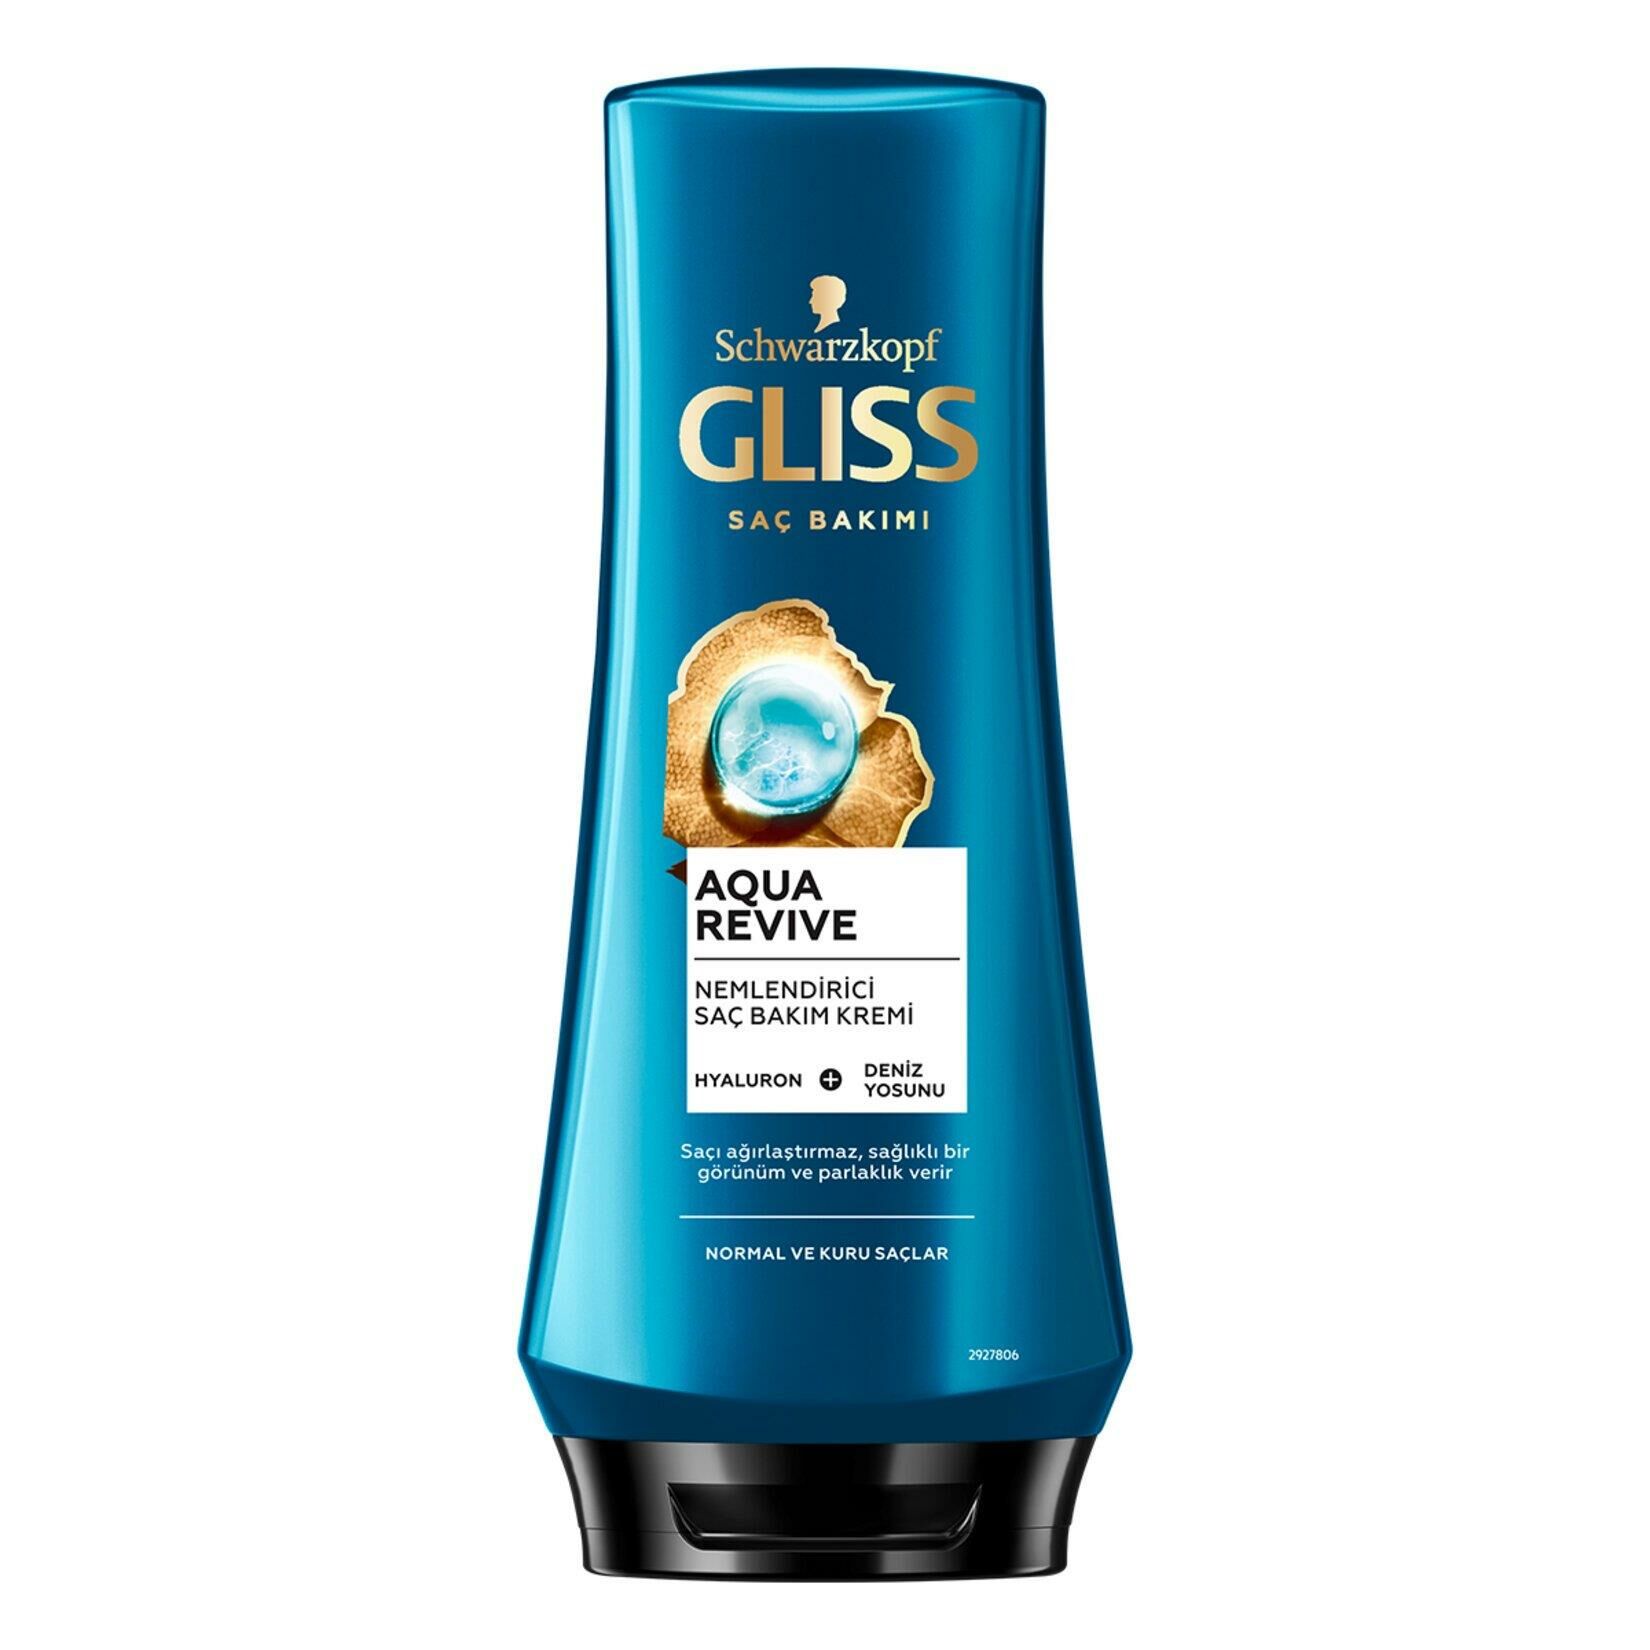 Gliss Aqua Revive Nemlendirici Saç Bakım Kremi - Hyaluron ve Deniz Yosunu Özü ile 360 ml